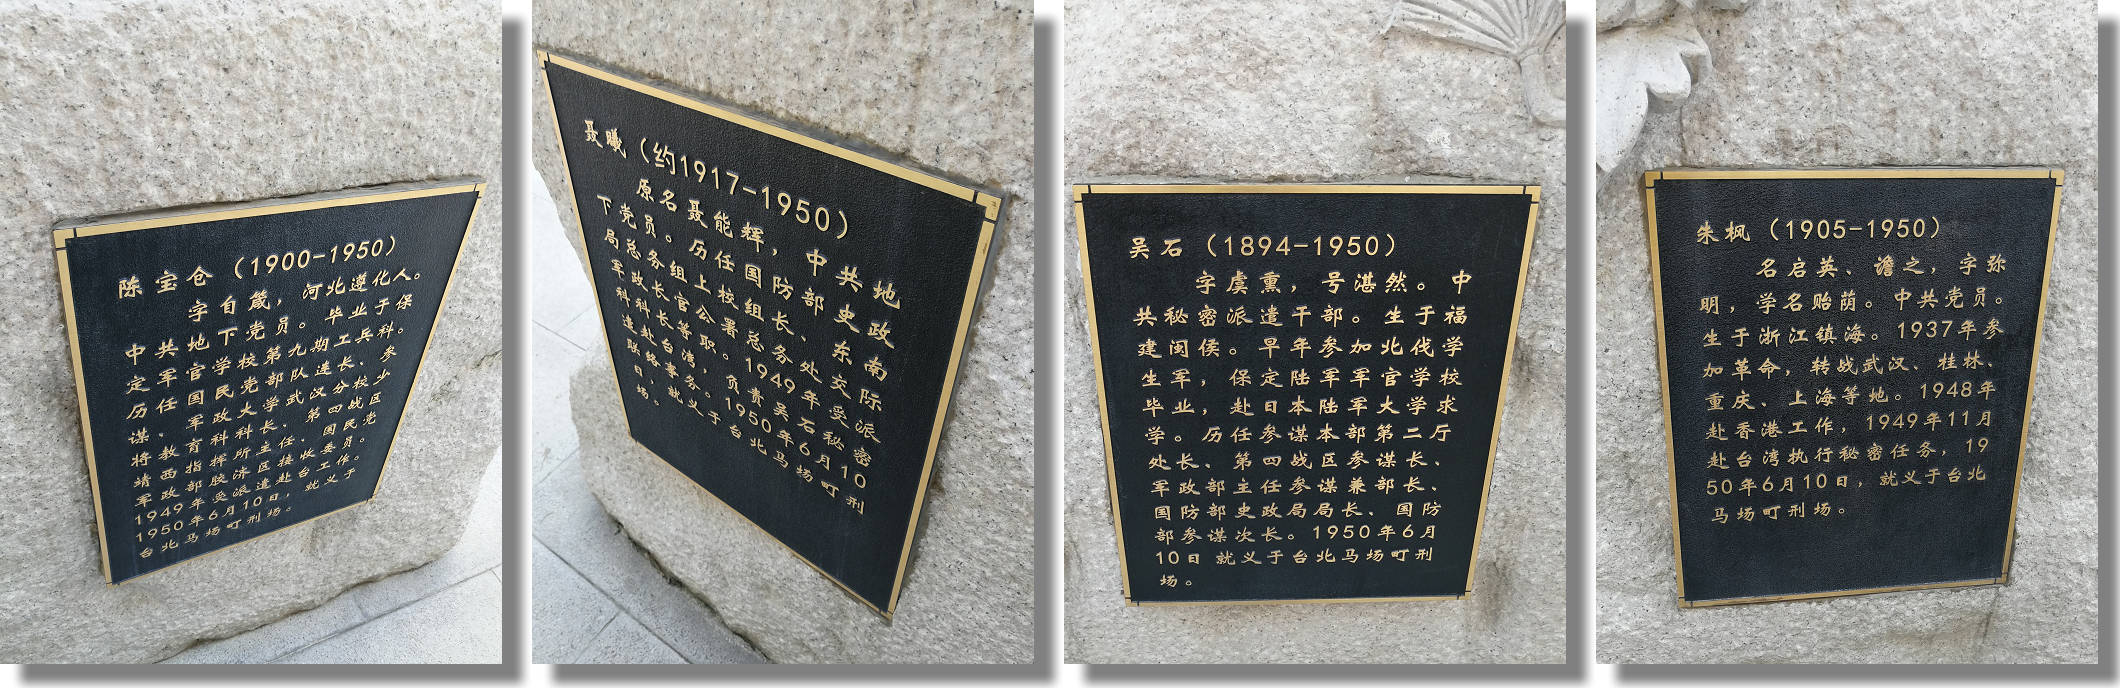 北京西山無名英雄紀念廣場，四立像所塑人物的說明。